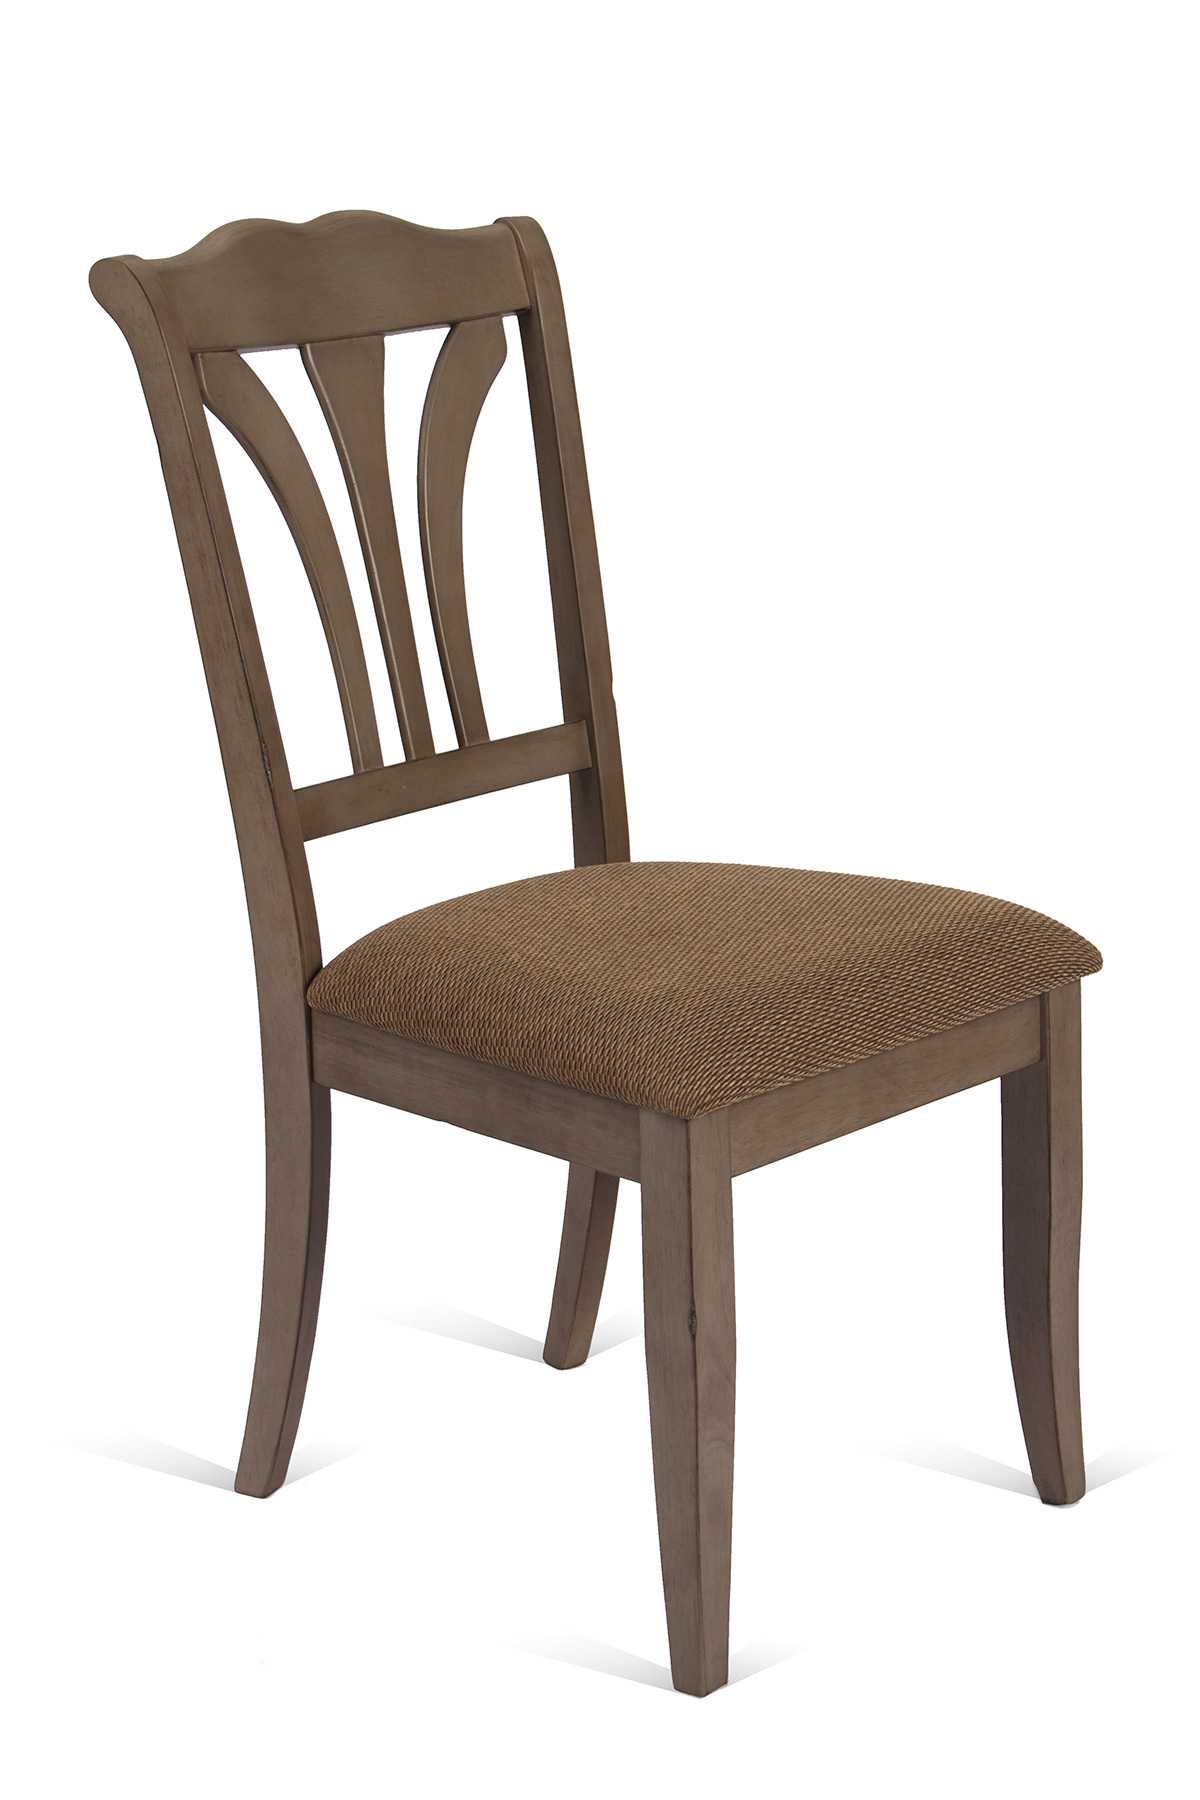 Почему деревянные стулья с мягким сиденьем лучше?